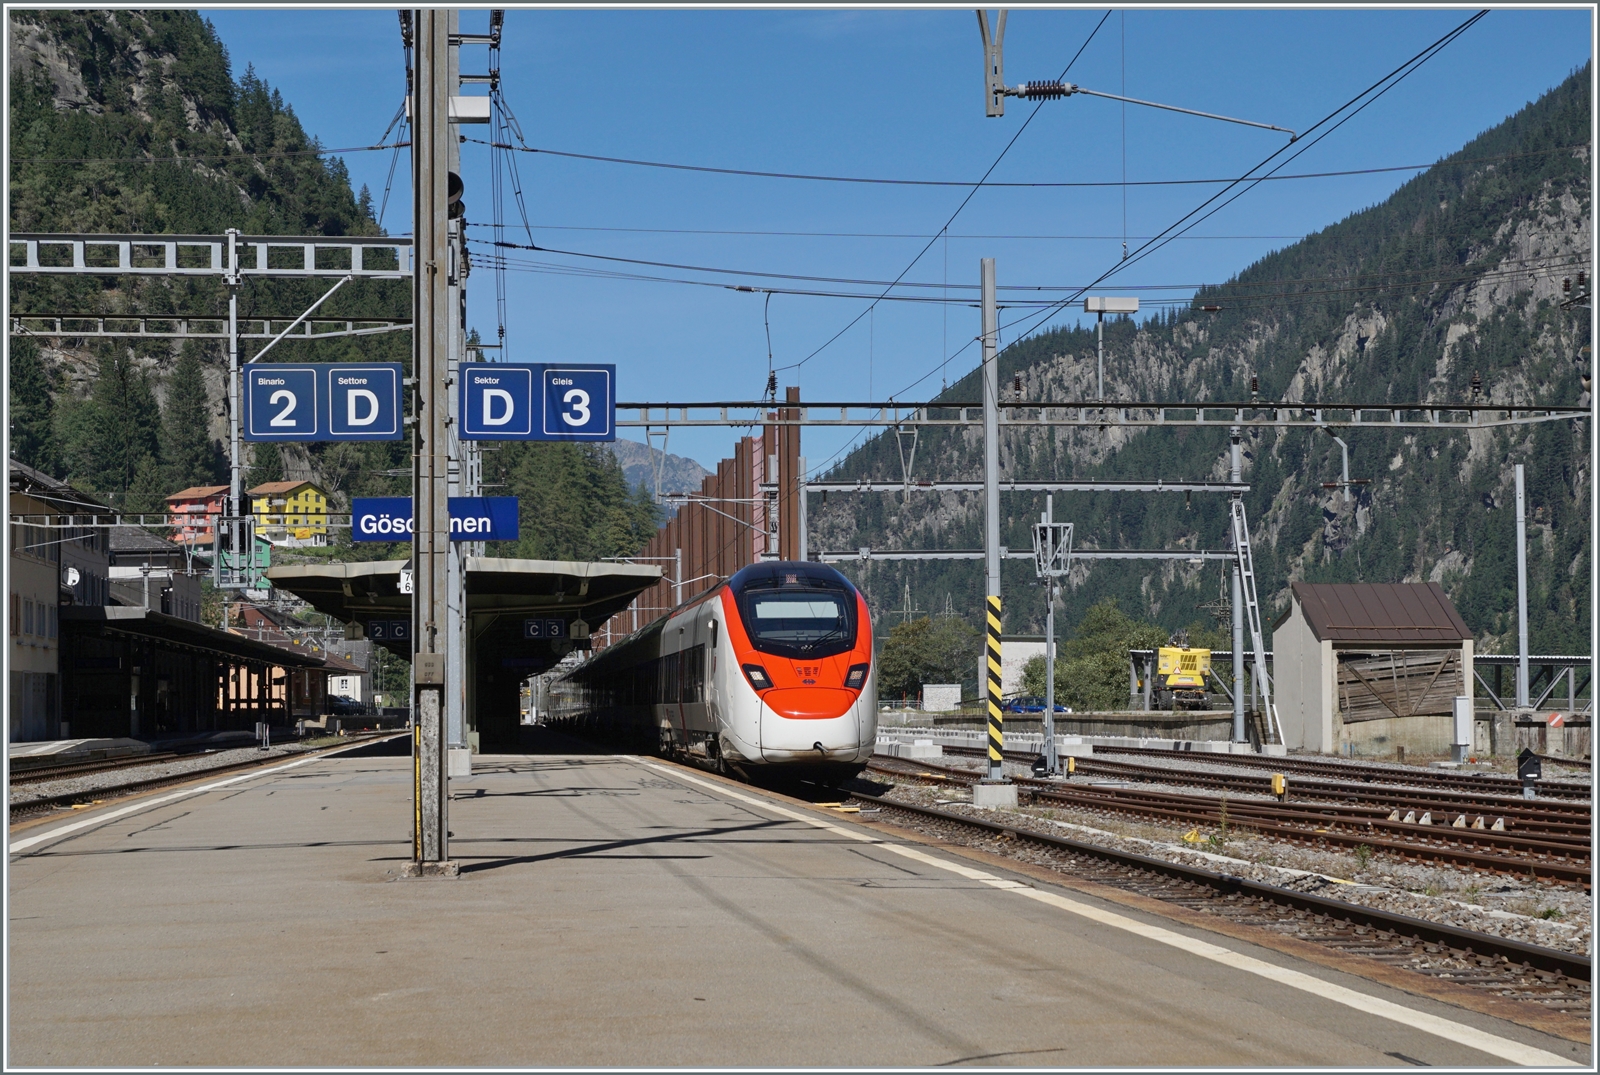 Ein SBB RABe 501  Giruno  ist als IC 10873 auf dem Weg von Zürich HB nach Lugano und fährt durch den Bahnhof von Göschenen. Rechts im Bild sind die kaum noch genutzten Gleise des Bahnhof zu sehen. Die Fahrleitung ist grösstenteils abgebaut, ein Umstand, welcher dank den noch vorhanden Fahrleitungsmasten kaum auffällt.

4. Sept. 2023